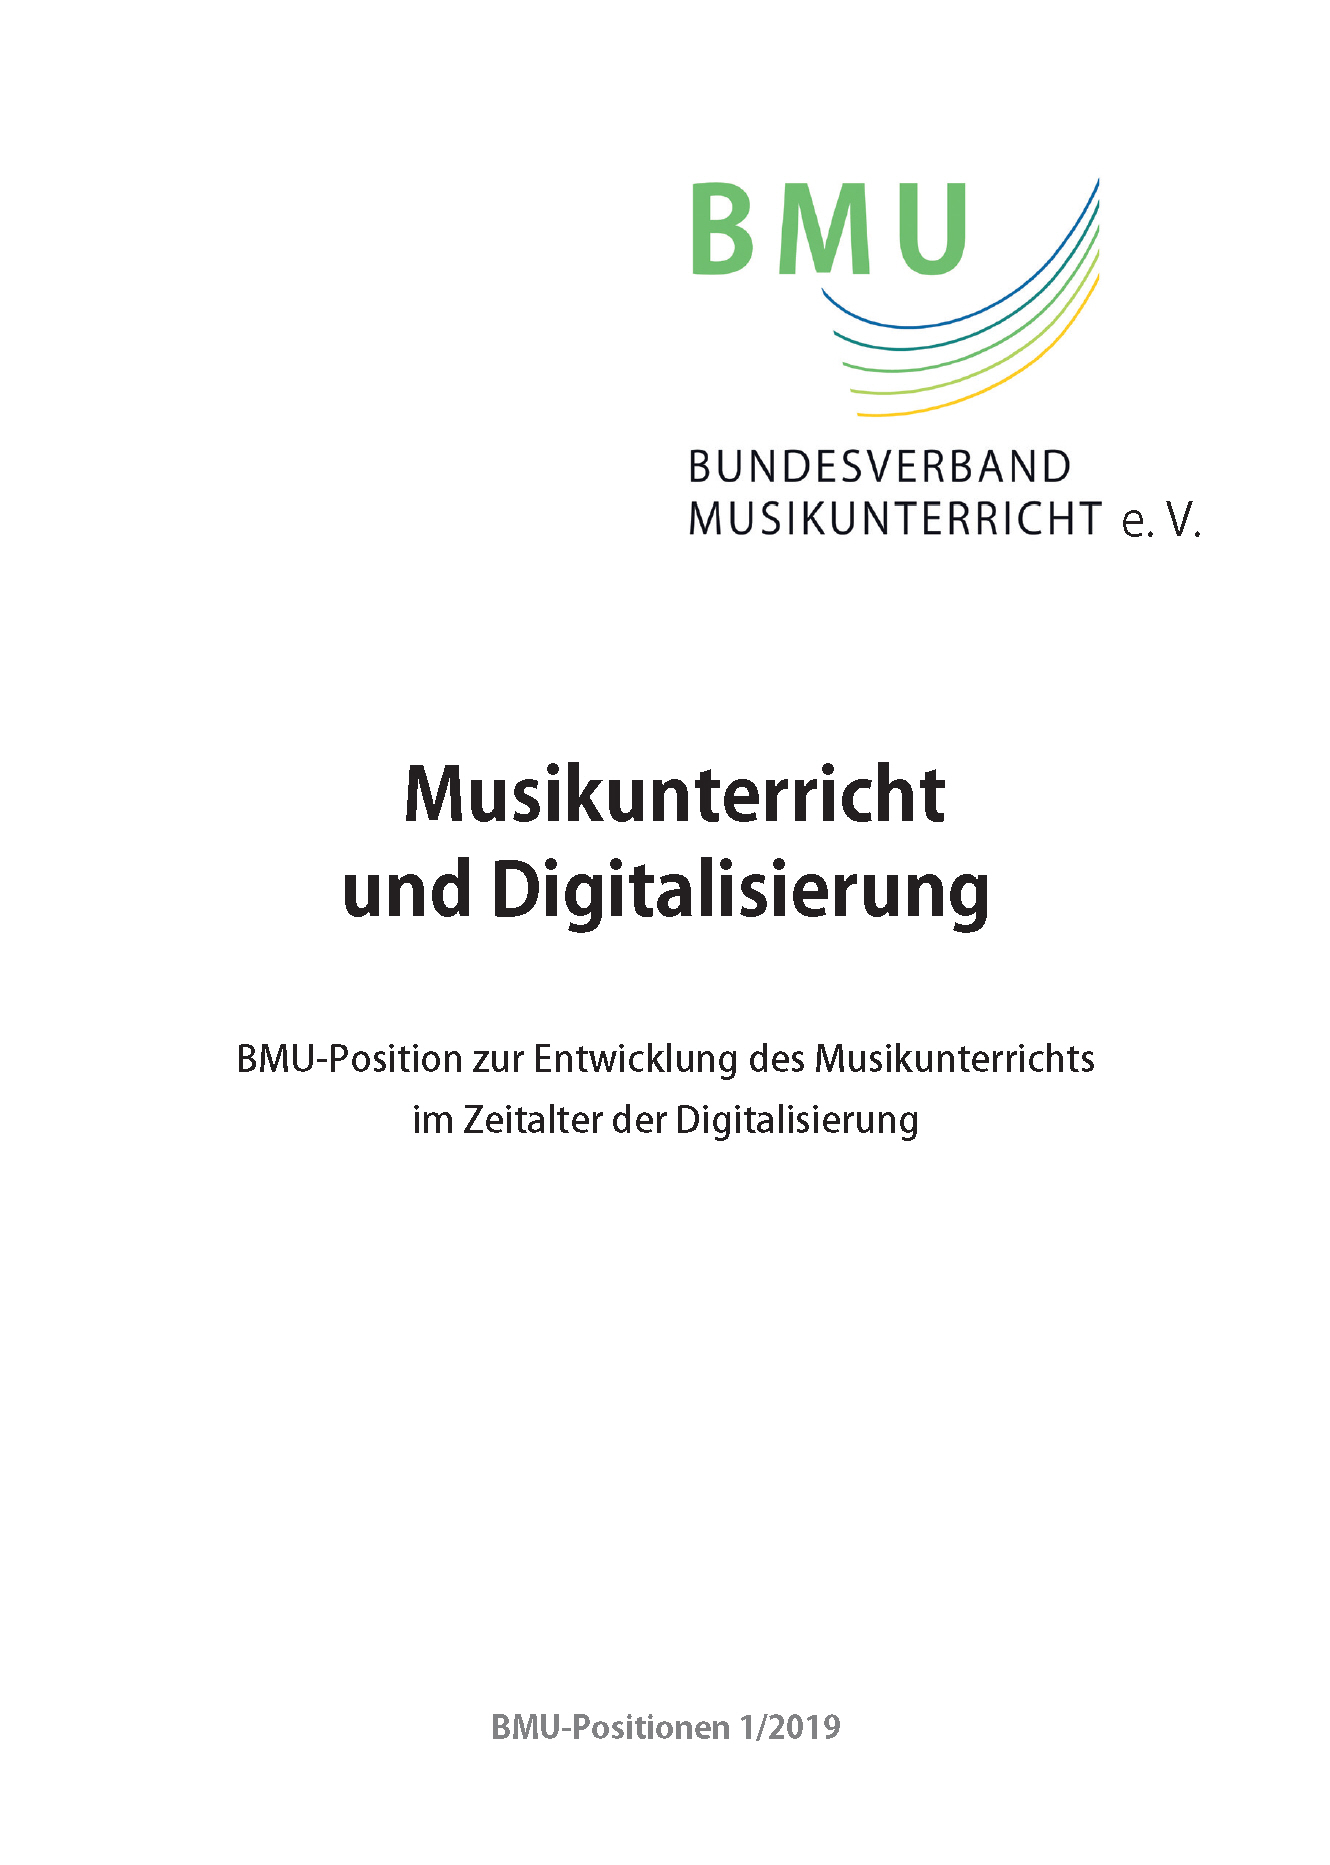 BMU-Position zur Digitalisierung von 2019